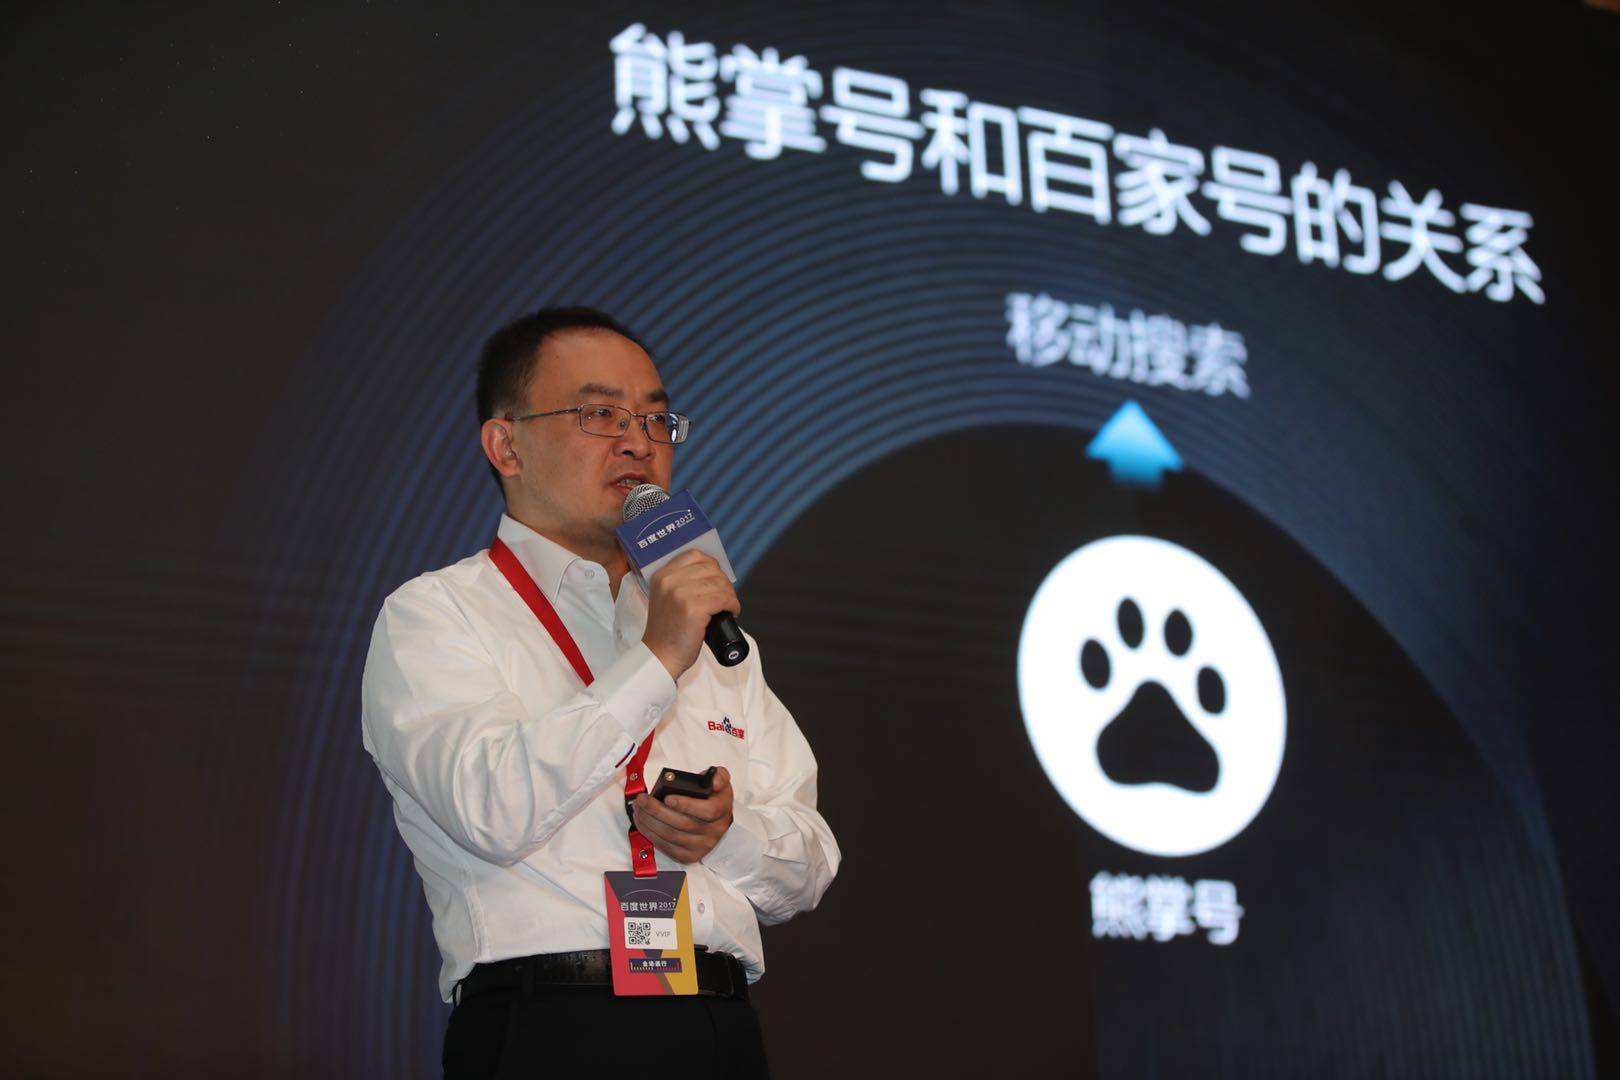 Xiang Hailong: Ny fifandraisan'ny Bear's Palm sy Baijia